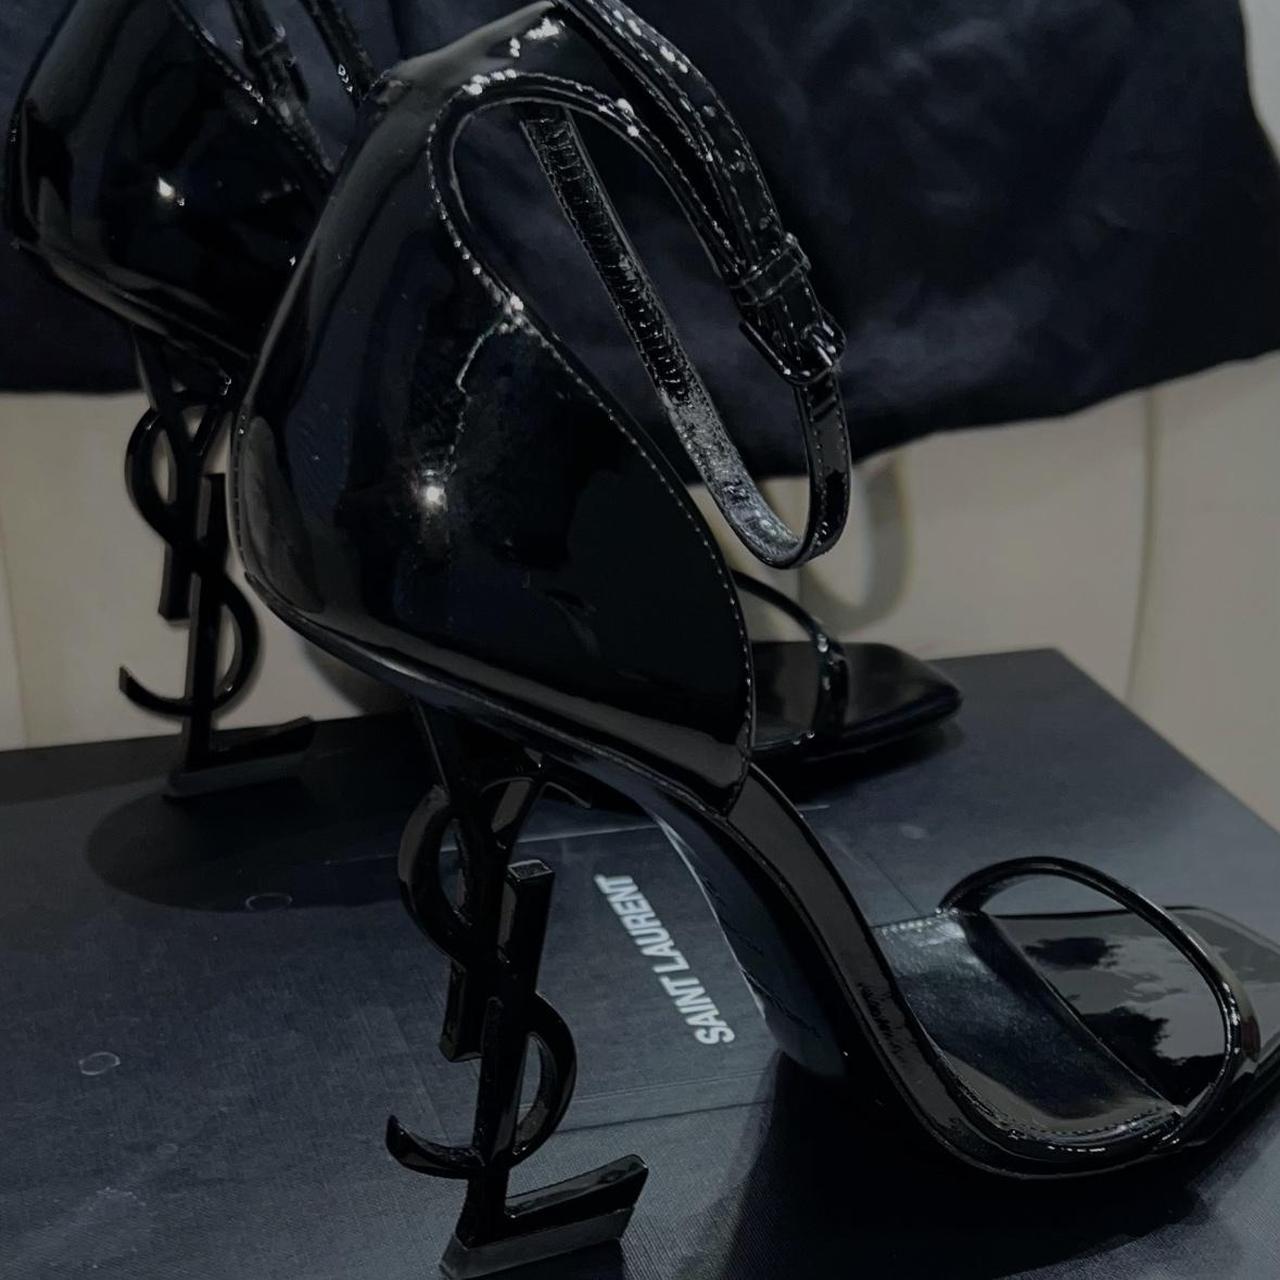 Opyum appelle-moi patent leather heels Saint Laurent Black size 38